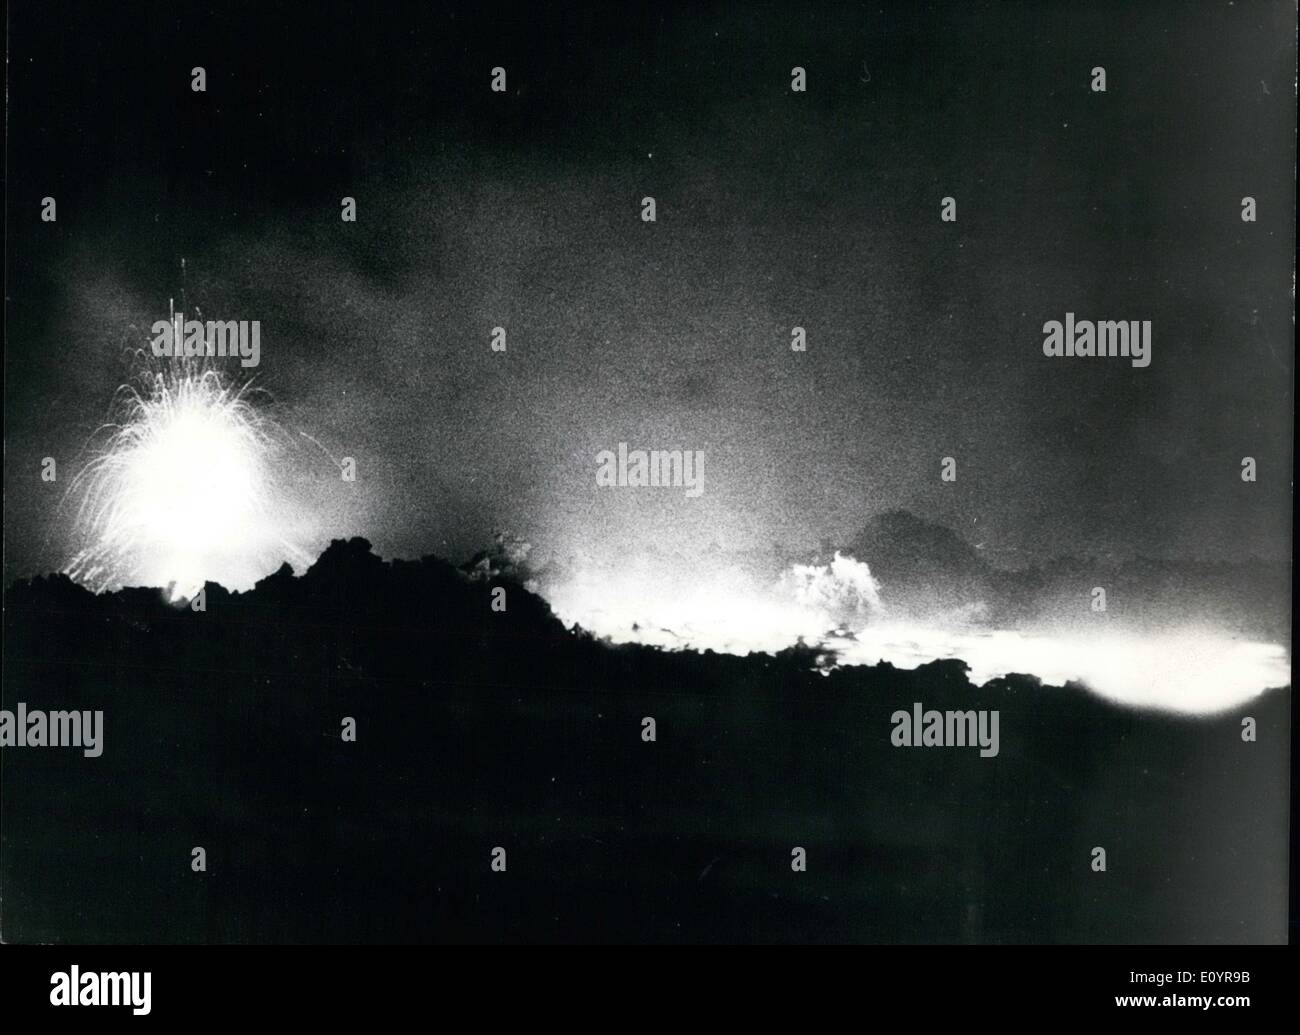 Apr. 04, 1971 - L'eruzione di Mt. Etna.: vulcanico Mt. Etna più grande eruzione dal 1950 è di continuare. Esplosioni ogni pochi minuti con hanno scagliato massi fuso nell'aria sono stati meno frequenti e meno violenti come osservatori segnalati. La foto mostra il cratere del vulcano in eruzione. Foto Stock